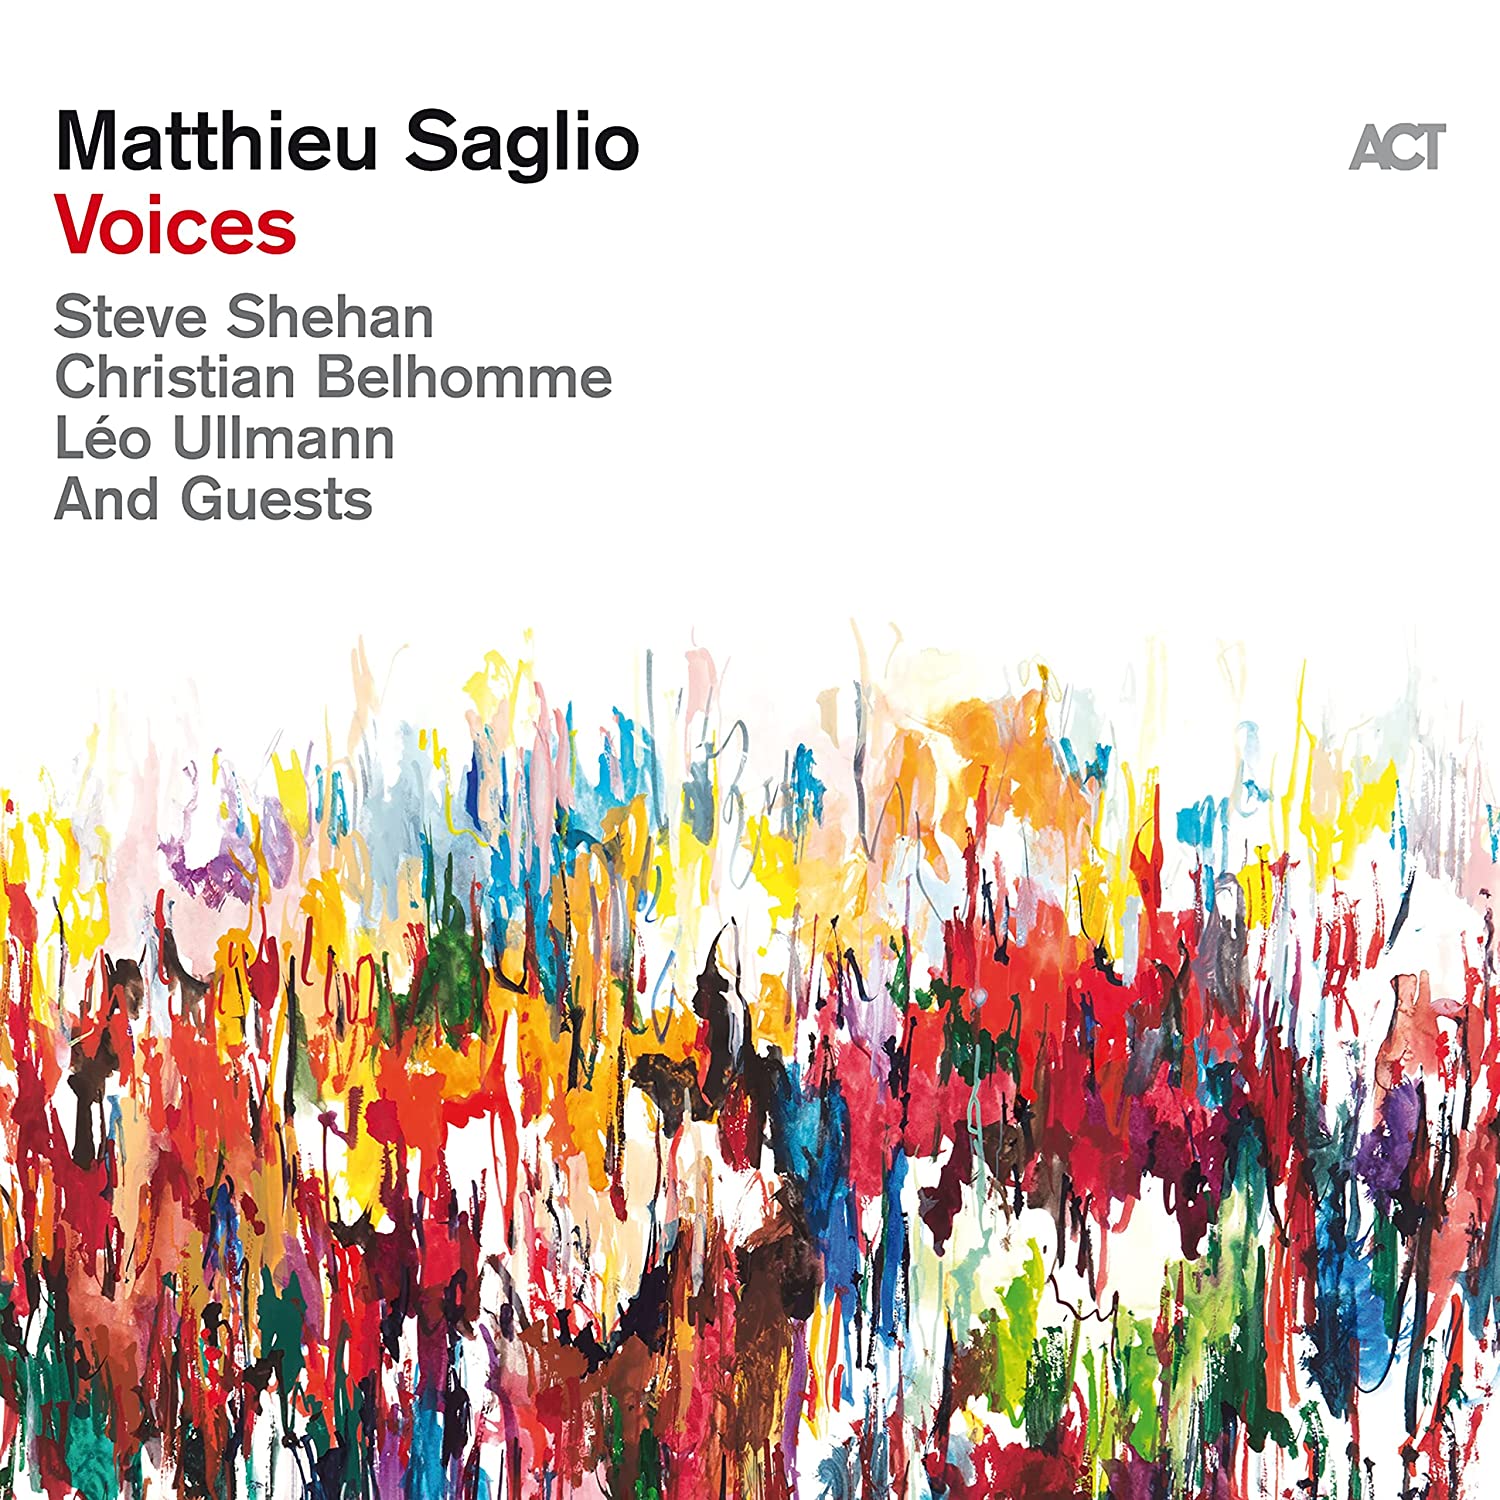 Voices - Matthieu Saglio